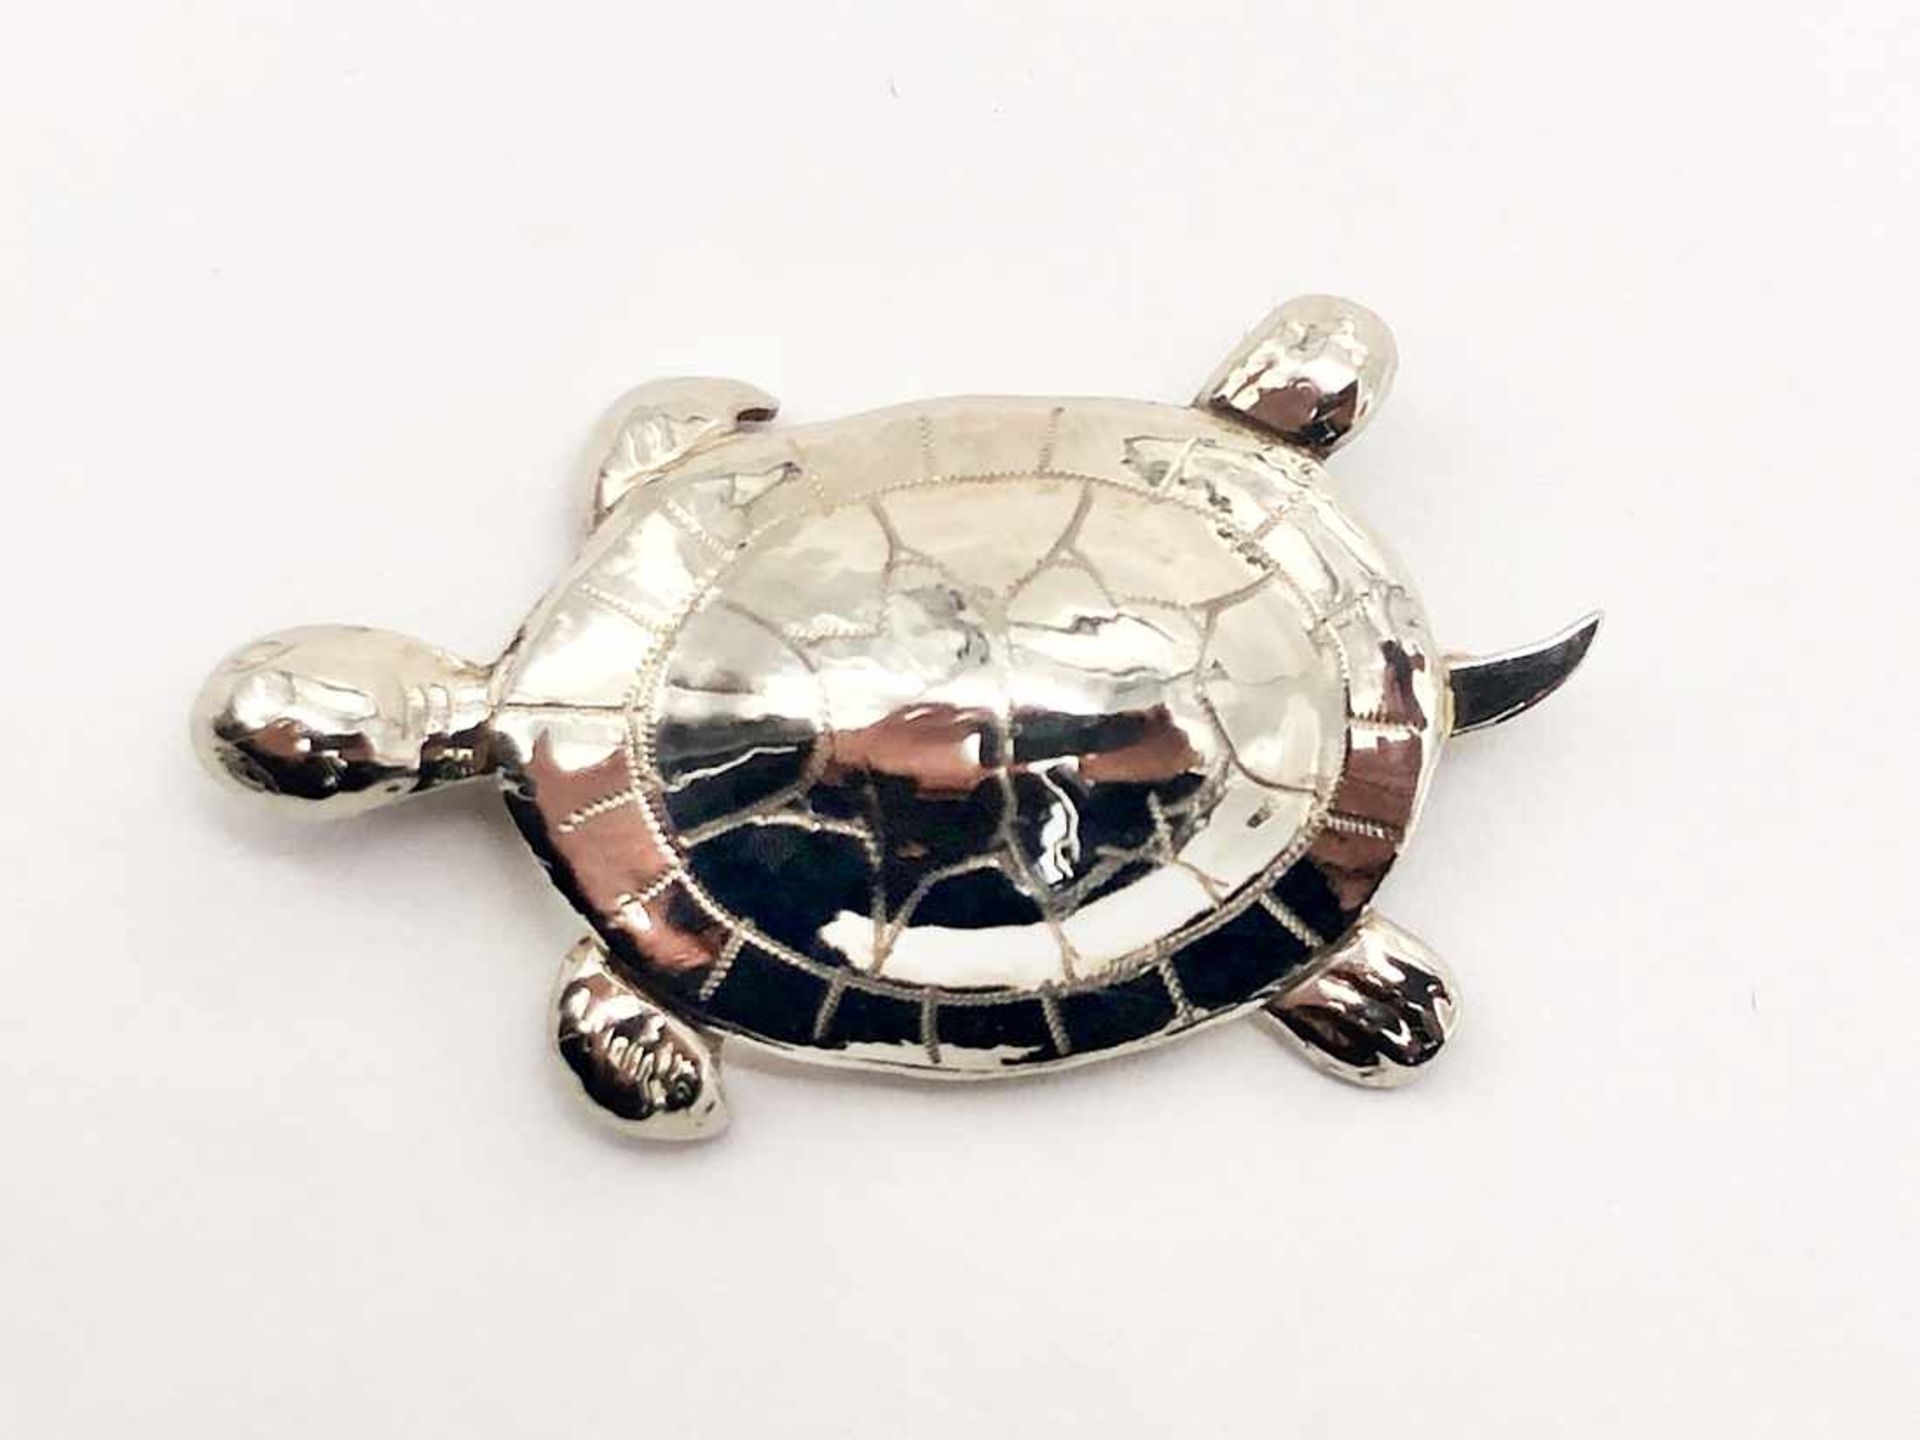 Brosche Schildkröte 585 WG / 4,6 g; Maße ca. 3,80 x 1,90 cm - Bild 4 aus 6